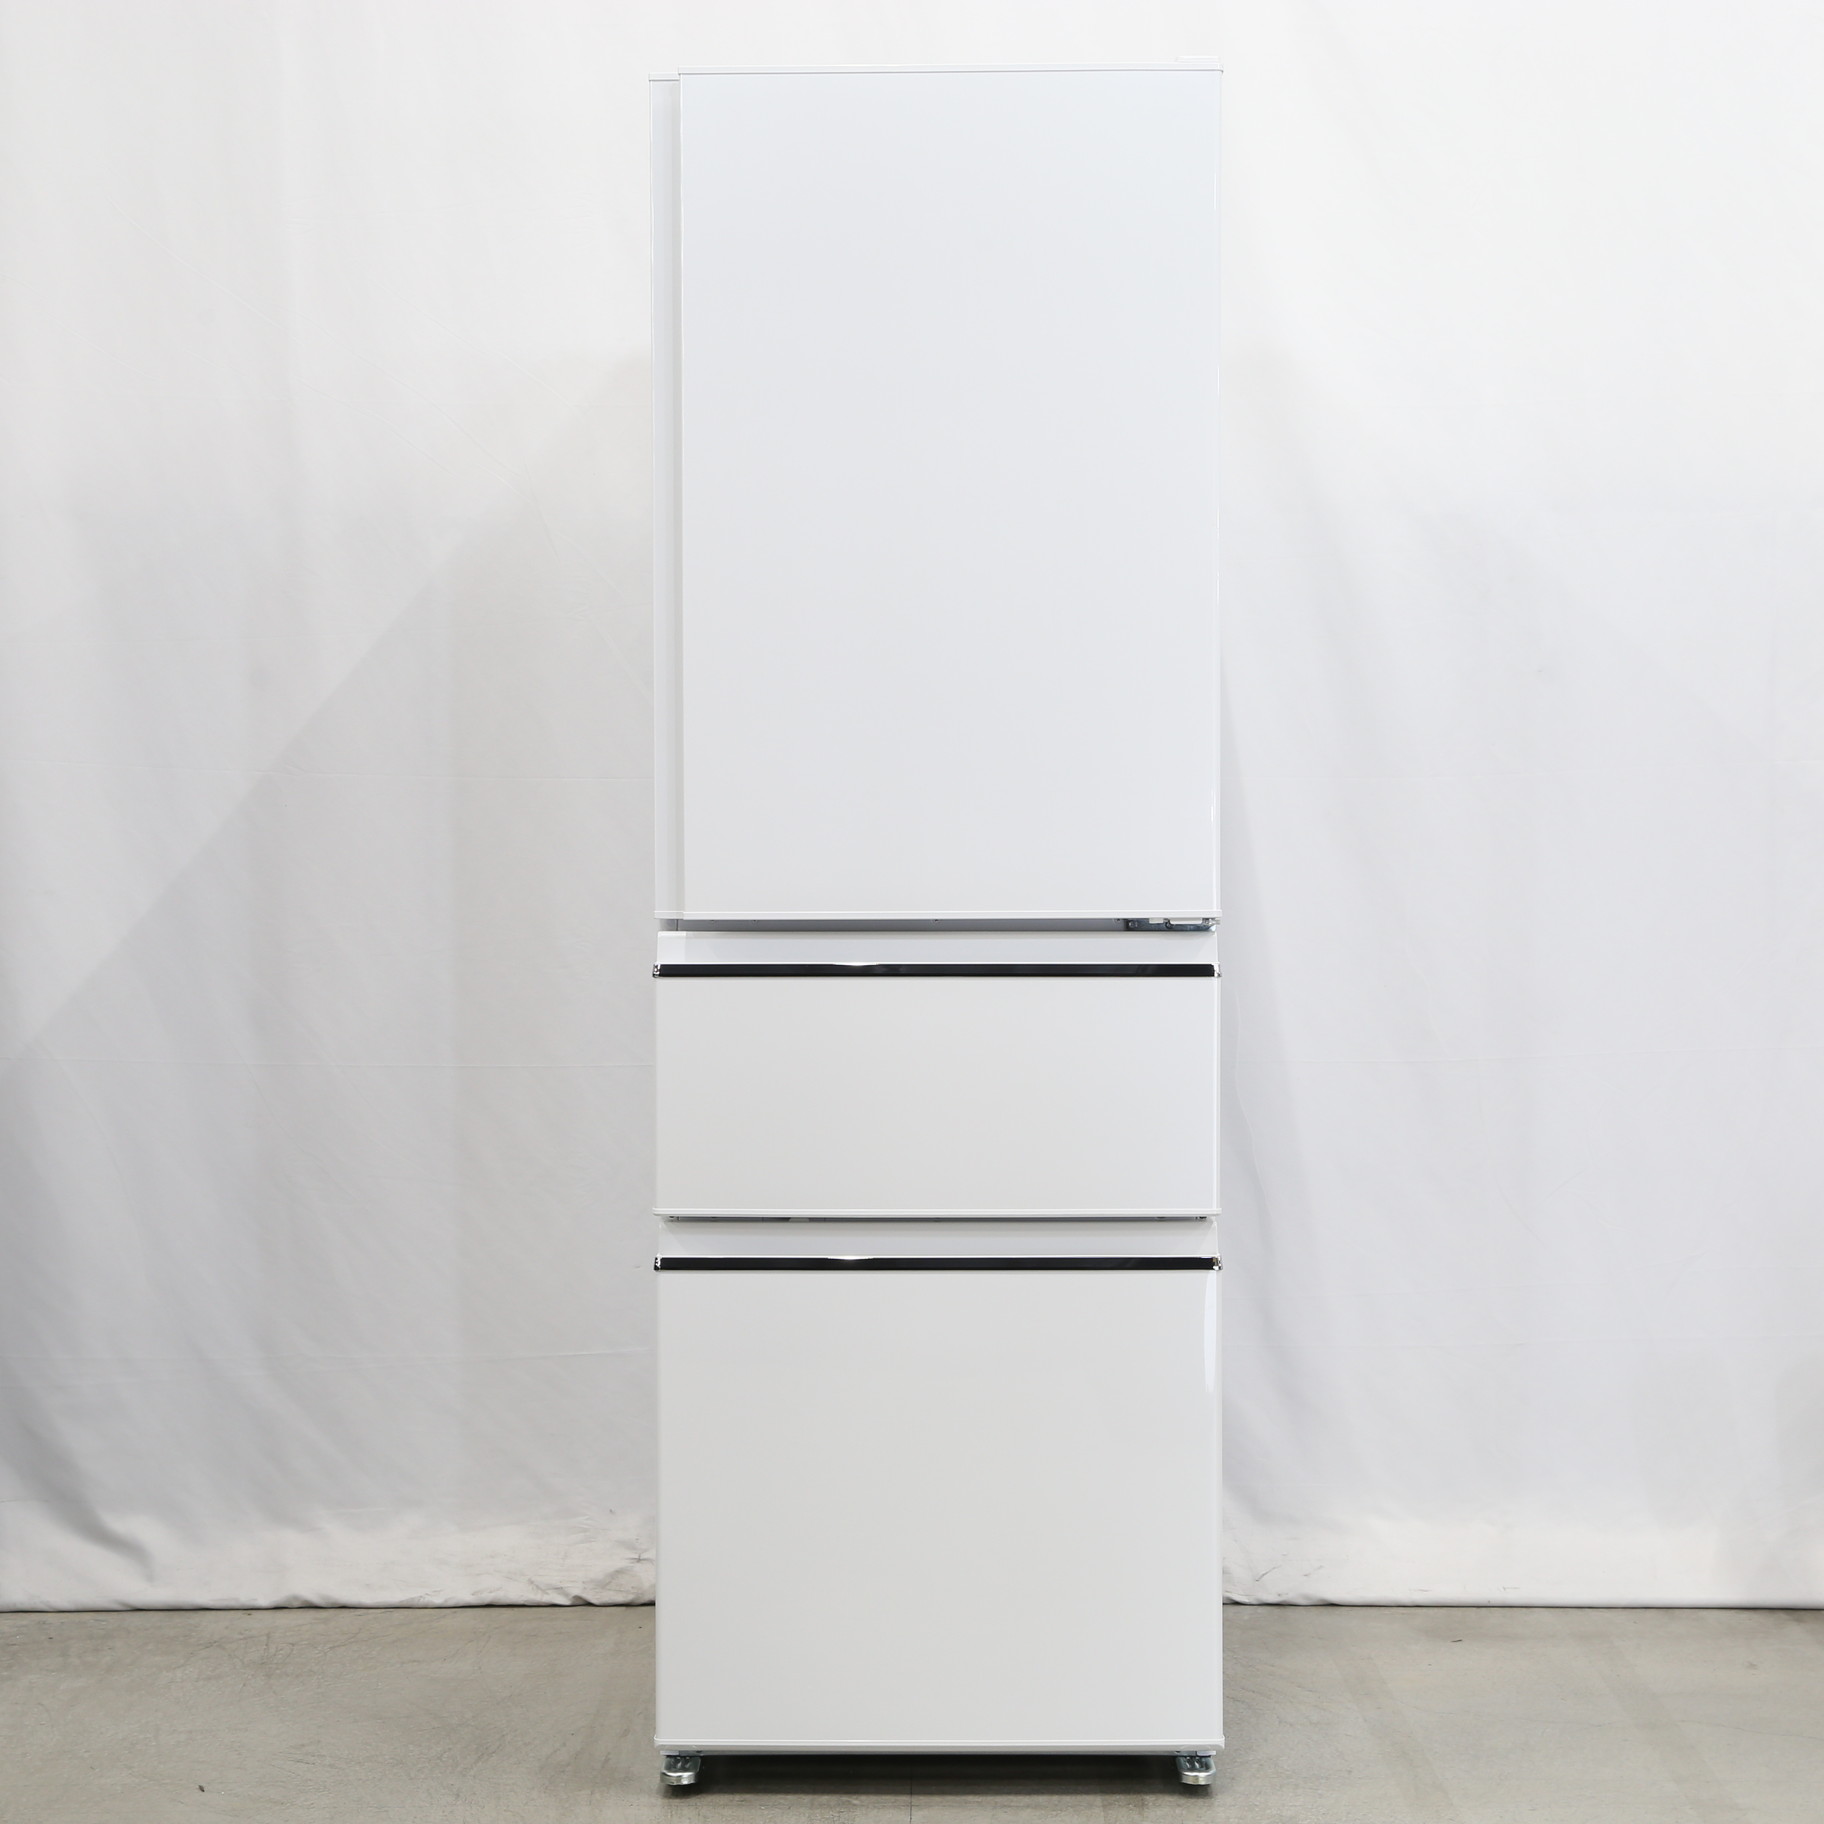 MITSUBISHI 365L 冷凍冷蔵庫 MR-CX37F-W 2020年製 - キッチン家電